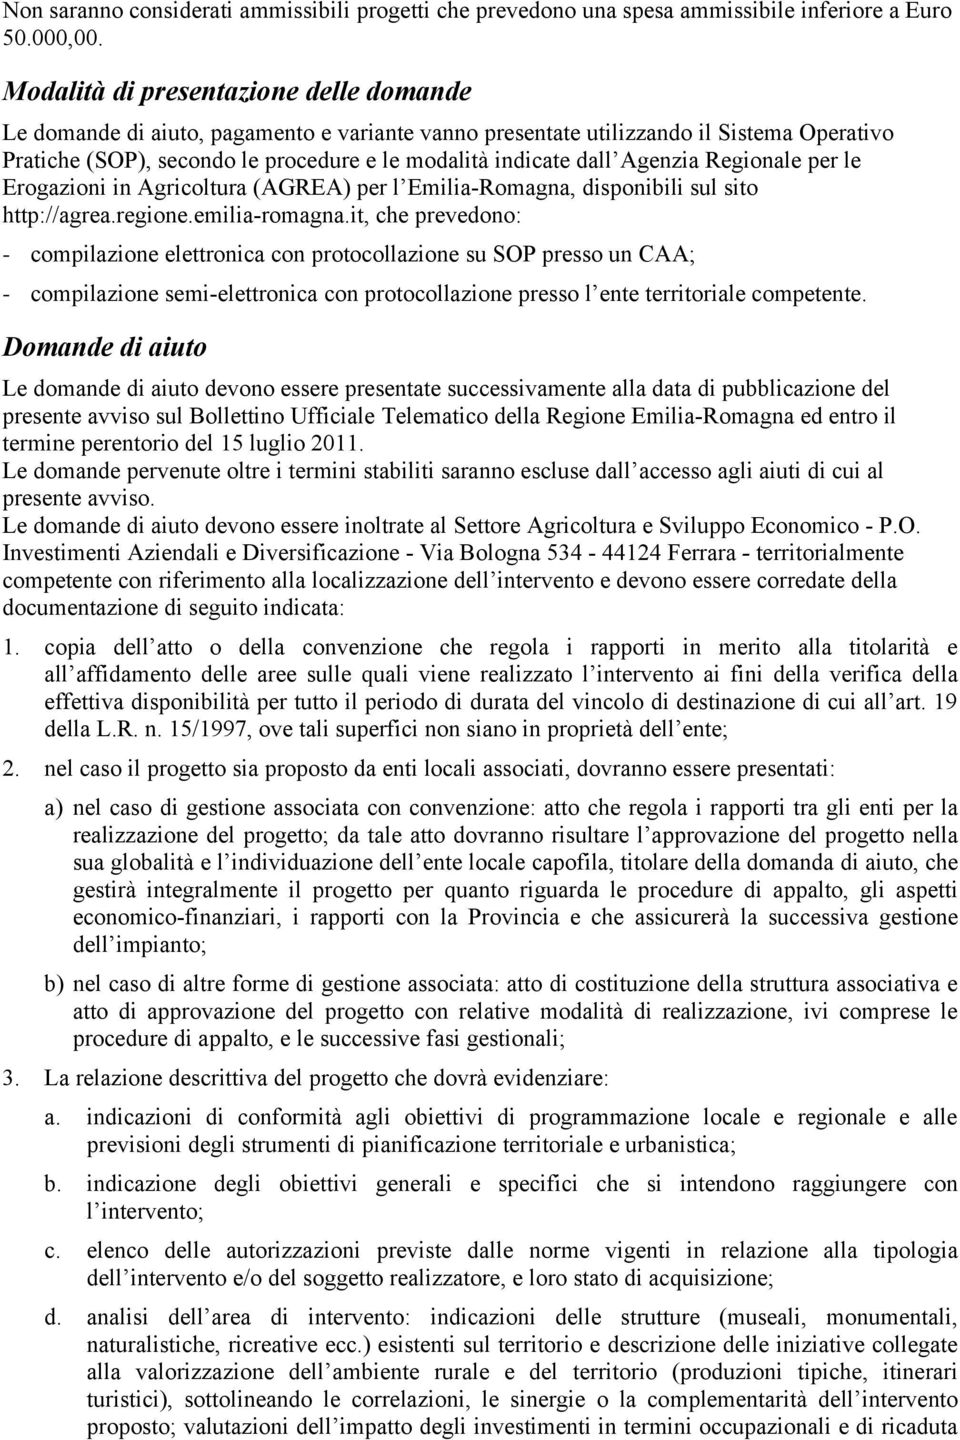 Agenzia Regionale per le Erogazioni in Agricoltura (AGREA) per l Emilia-Romagna, disponibili sul sito http://agrea.regione.emilia-romagna.